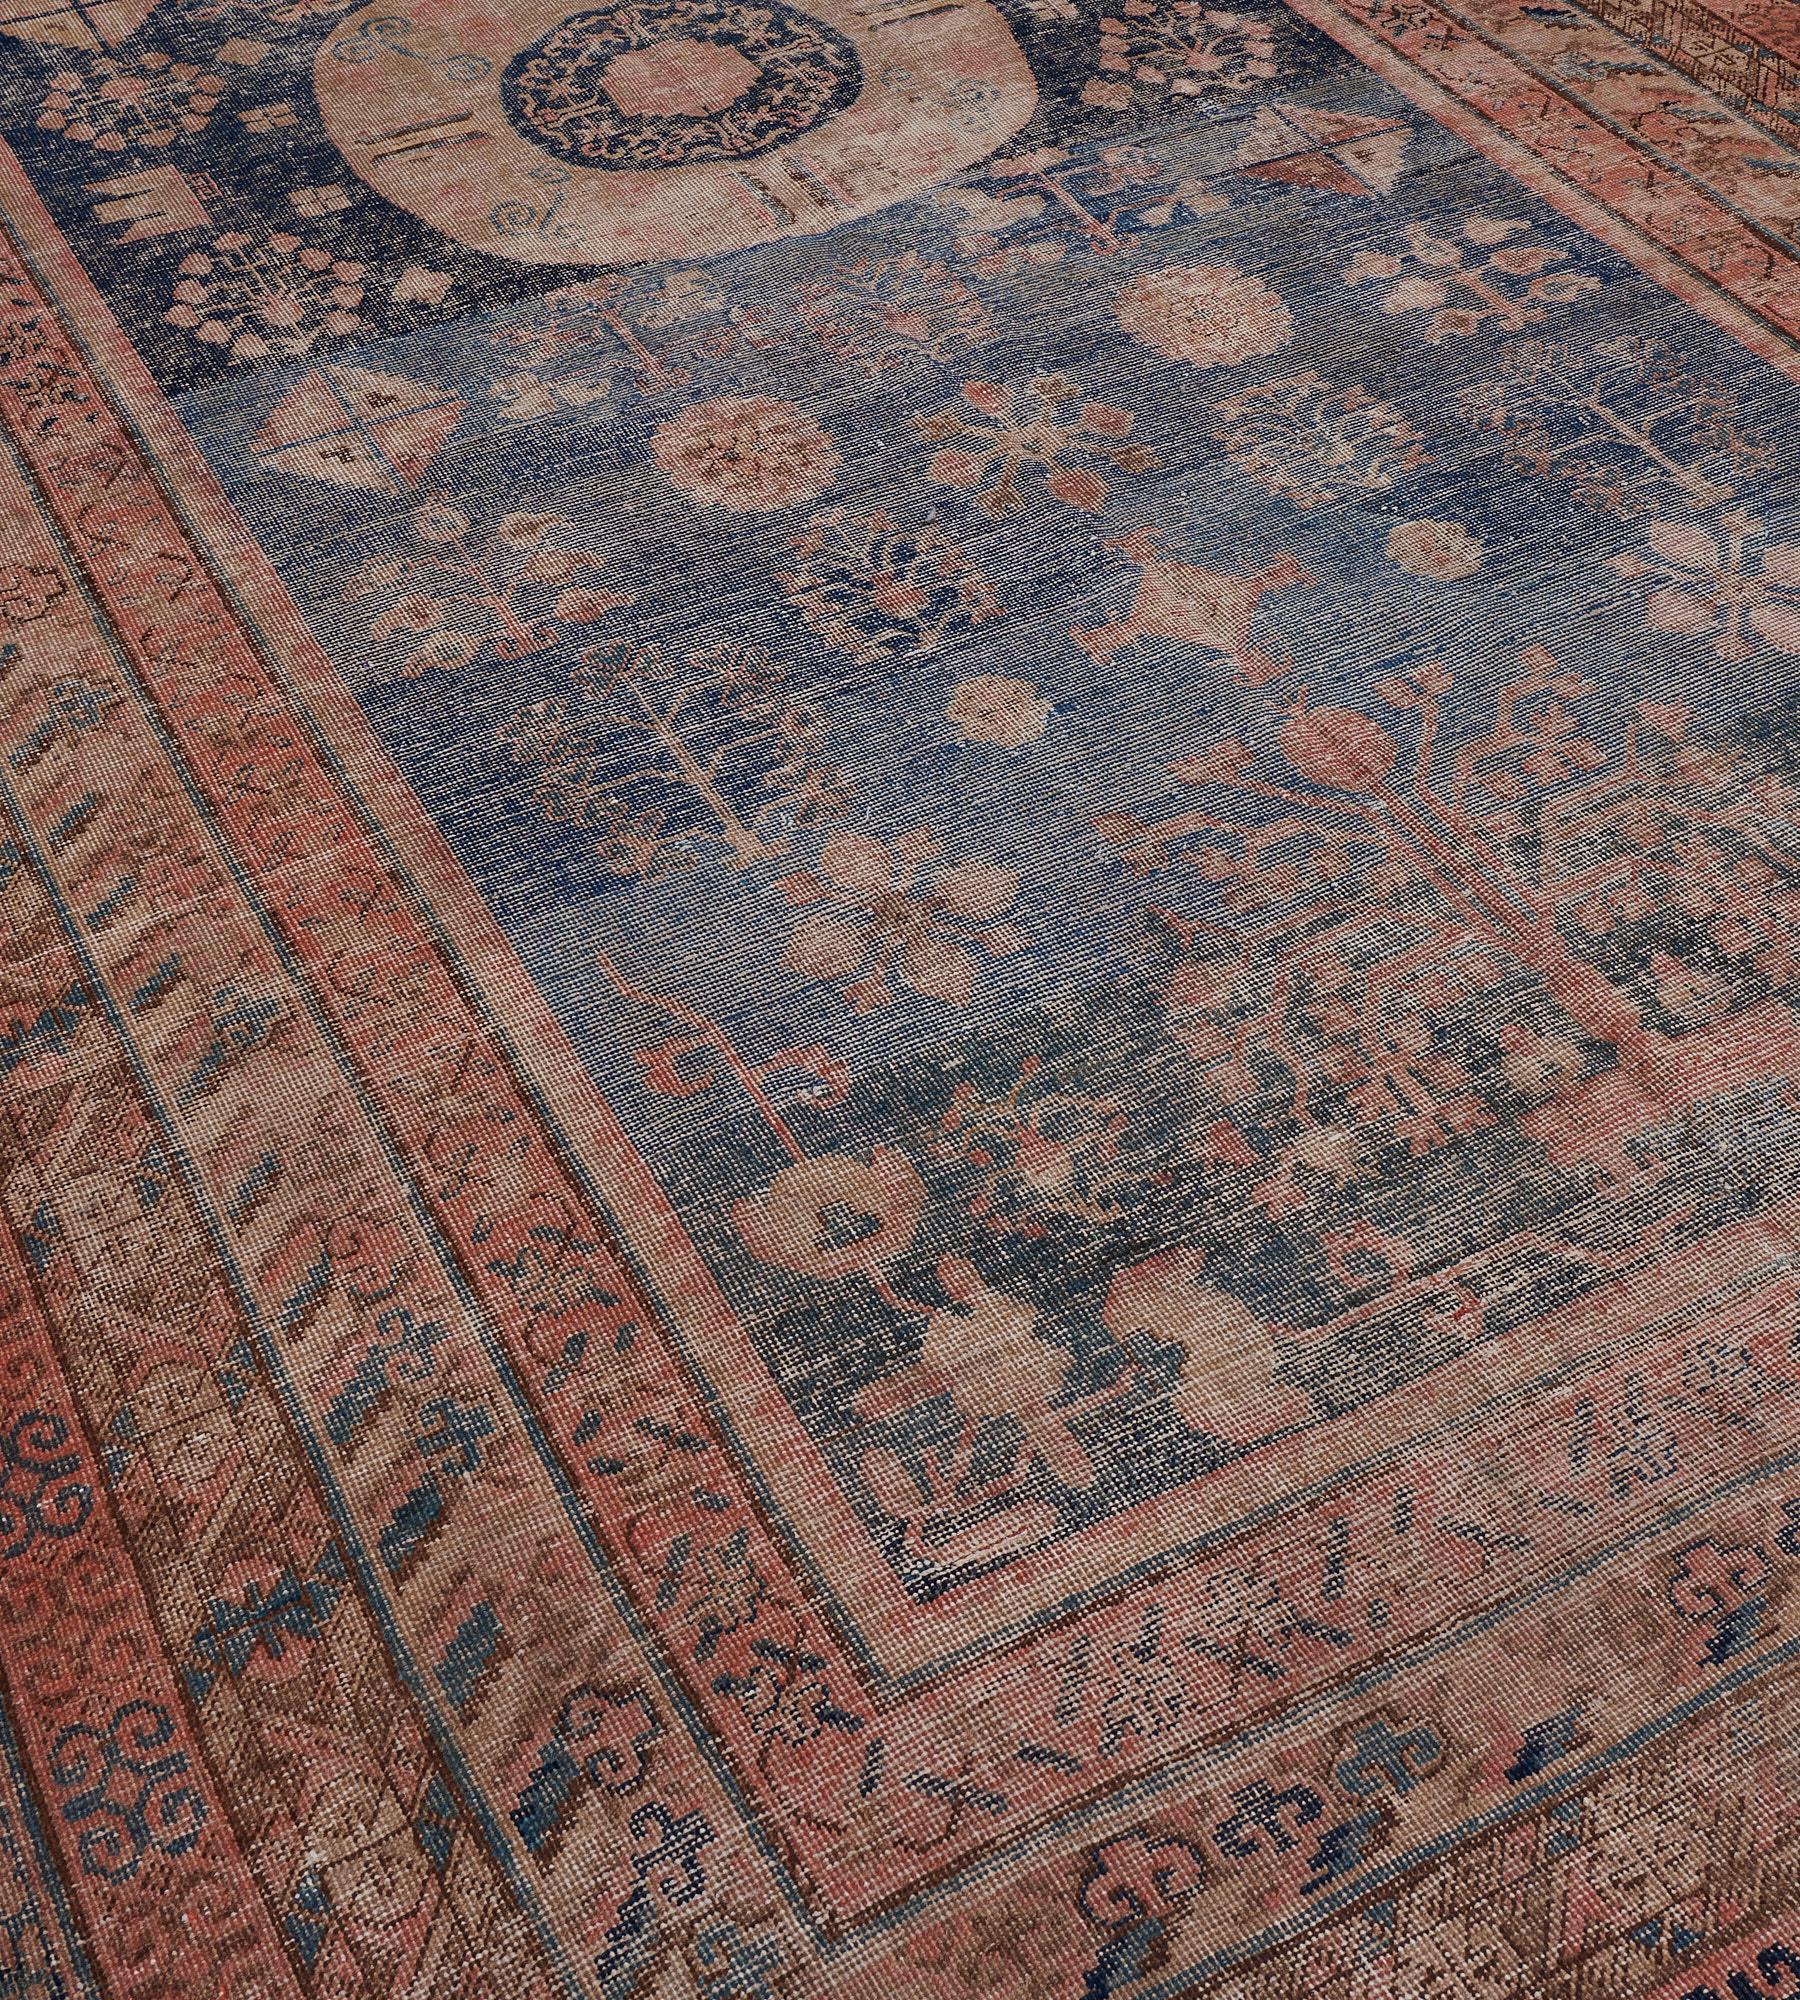 Dieser antike Khotan-Teppich um 1880 hat ein tiefes indigoblaues Feld, das mit einer Vielzahl von Blumenmotiven und blühenden Vasen um ein zentrales Rautenmedaillon mit einer indigoblauen zentralen Rosette verstreut ist, die einen Blumenkopf und ein